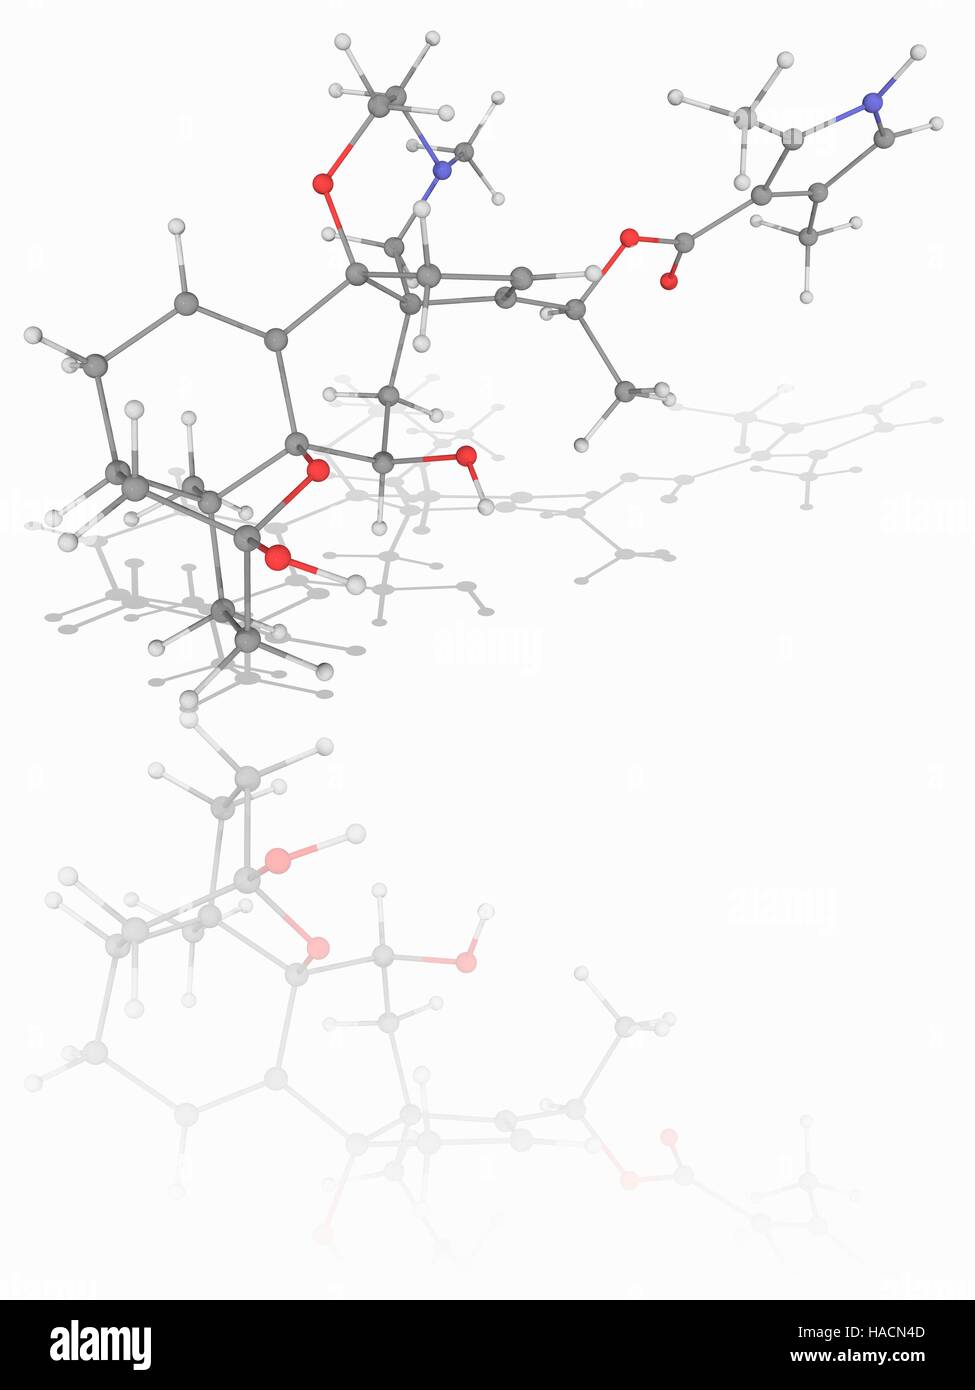 Batrachotoxin. Molekulares Modell des Alkaloids Batrachotoxin (C31. H42. N2. O6), eine kardiotoxische und neurotoxischen Chemikalie in Pfeilgiftfrösche gefunden. Atome als Kugeln dargestellt werden und sind farblich gekennzeichnet: Kohlenstoff (grau), Wasserstoff (weiß), Stickstoff (blau) und Sauerstoff (rot). Abbildung. Stockfoto